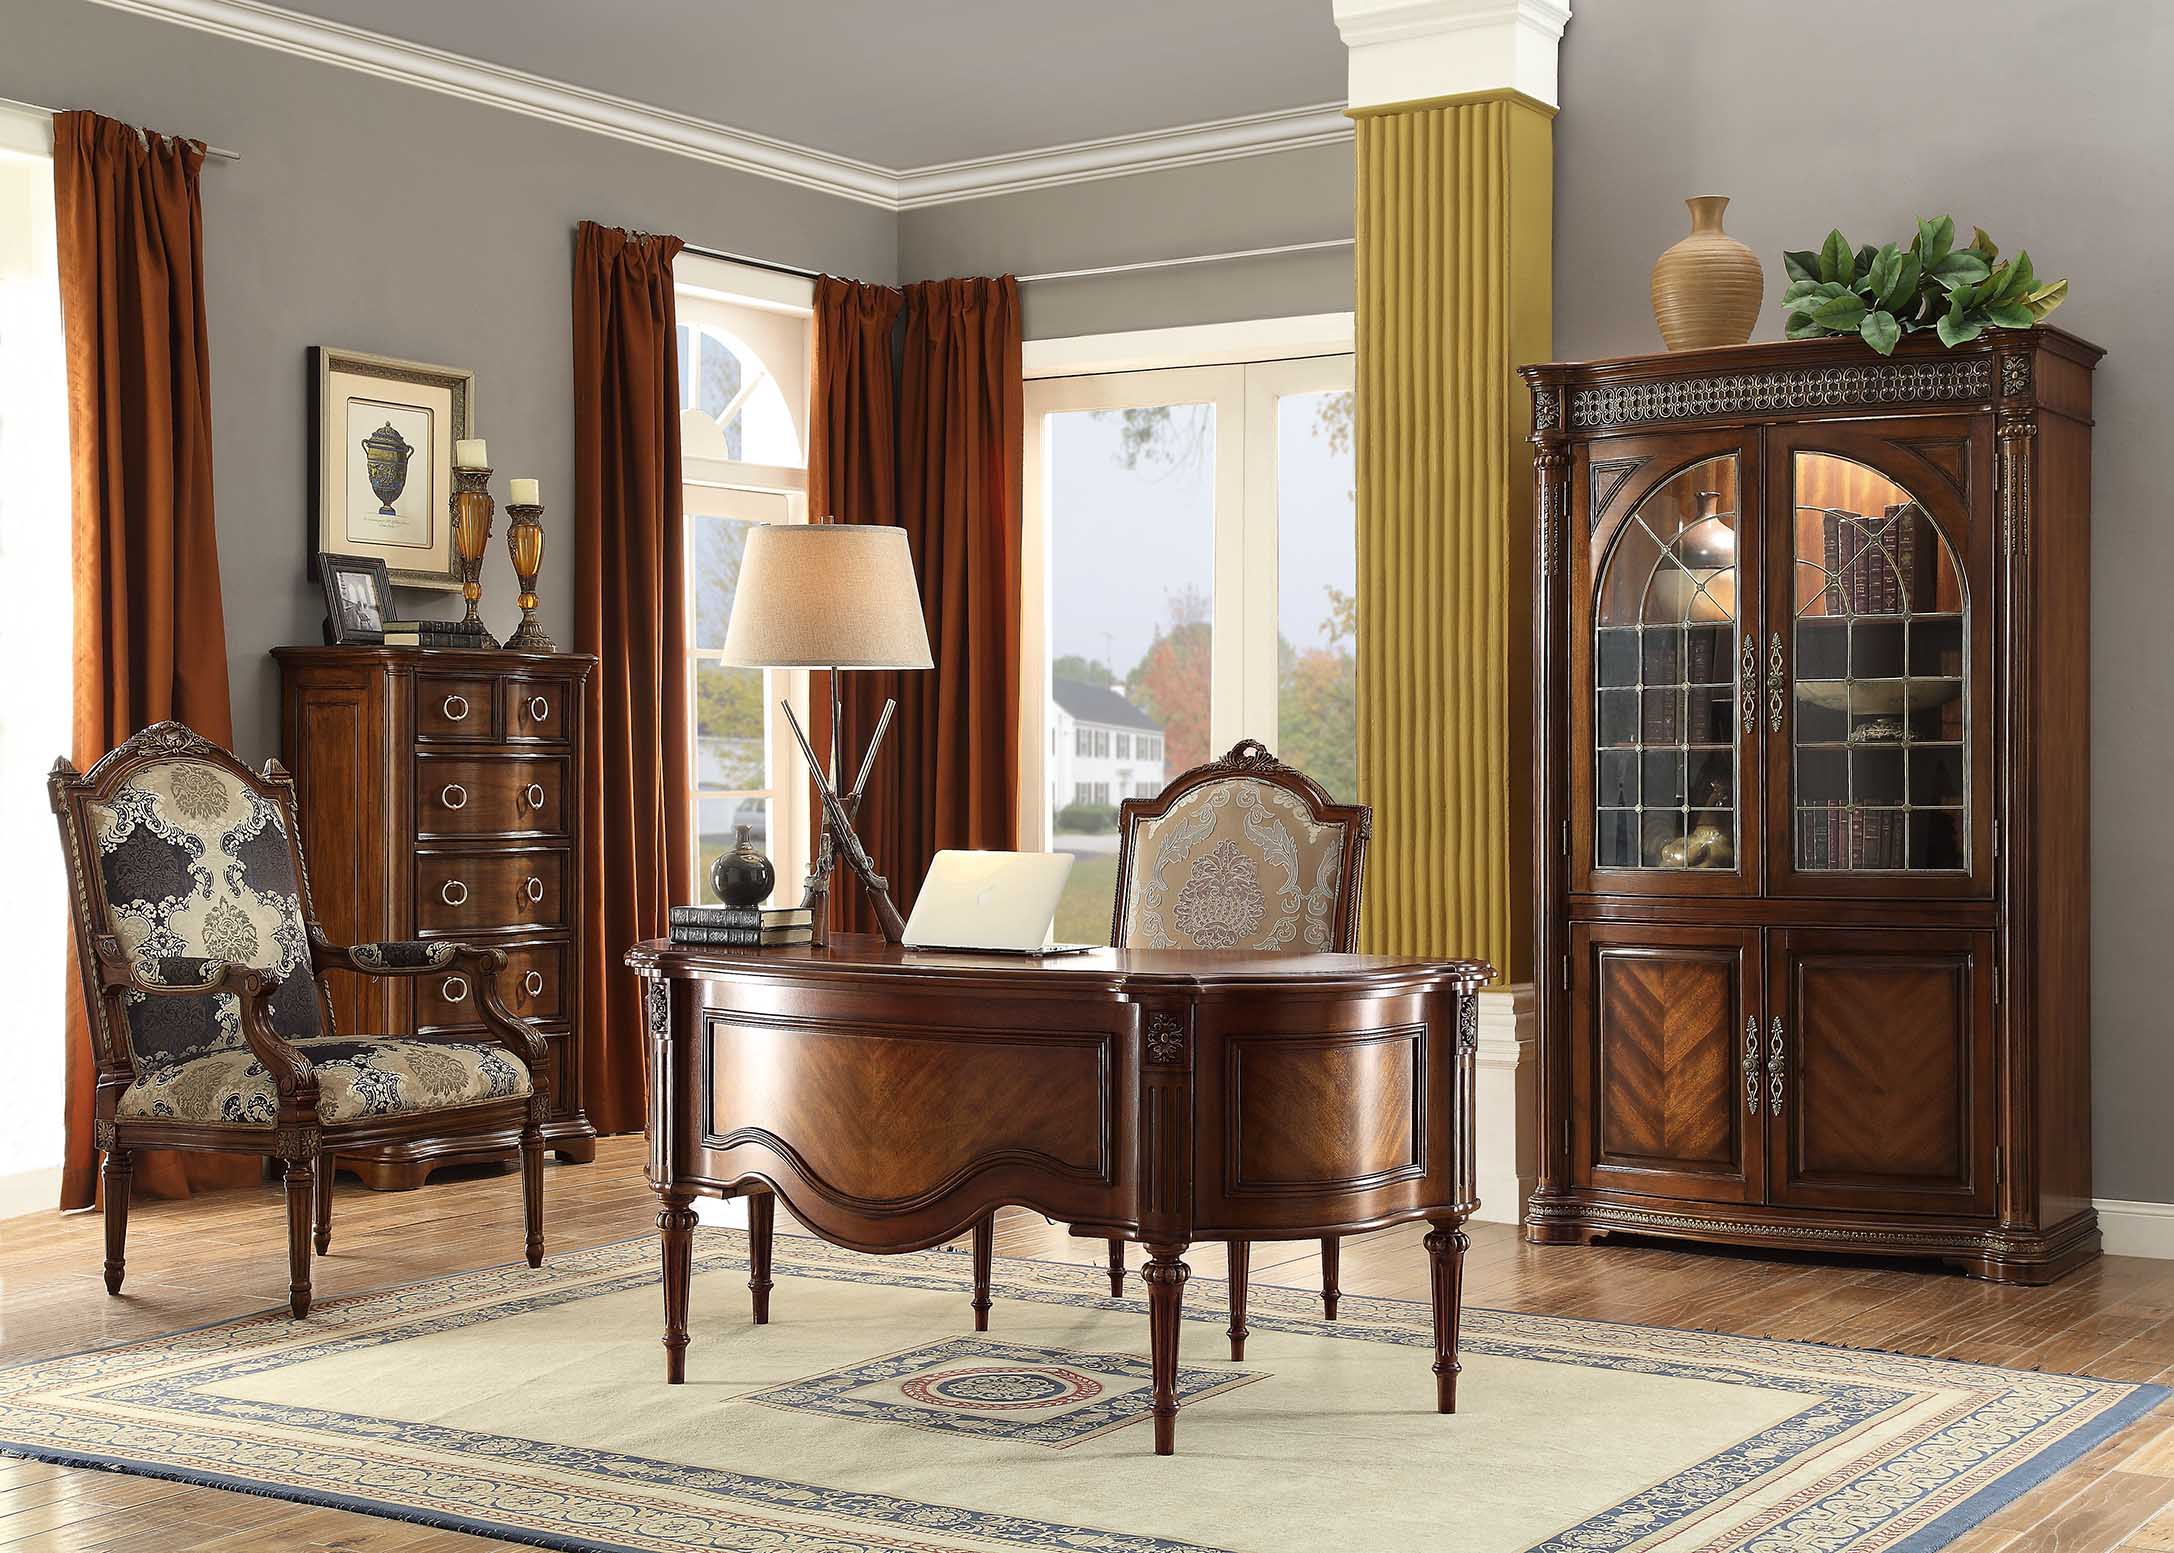 强调简洁,明晰的线条和优雅,得体有度的装饰是美式家具的特征.